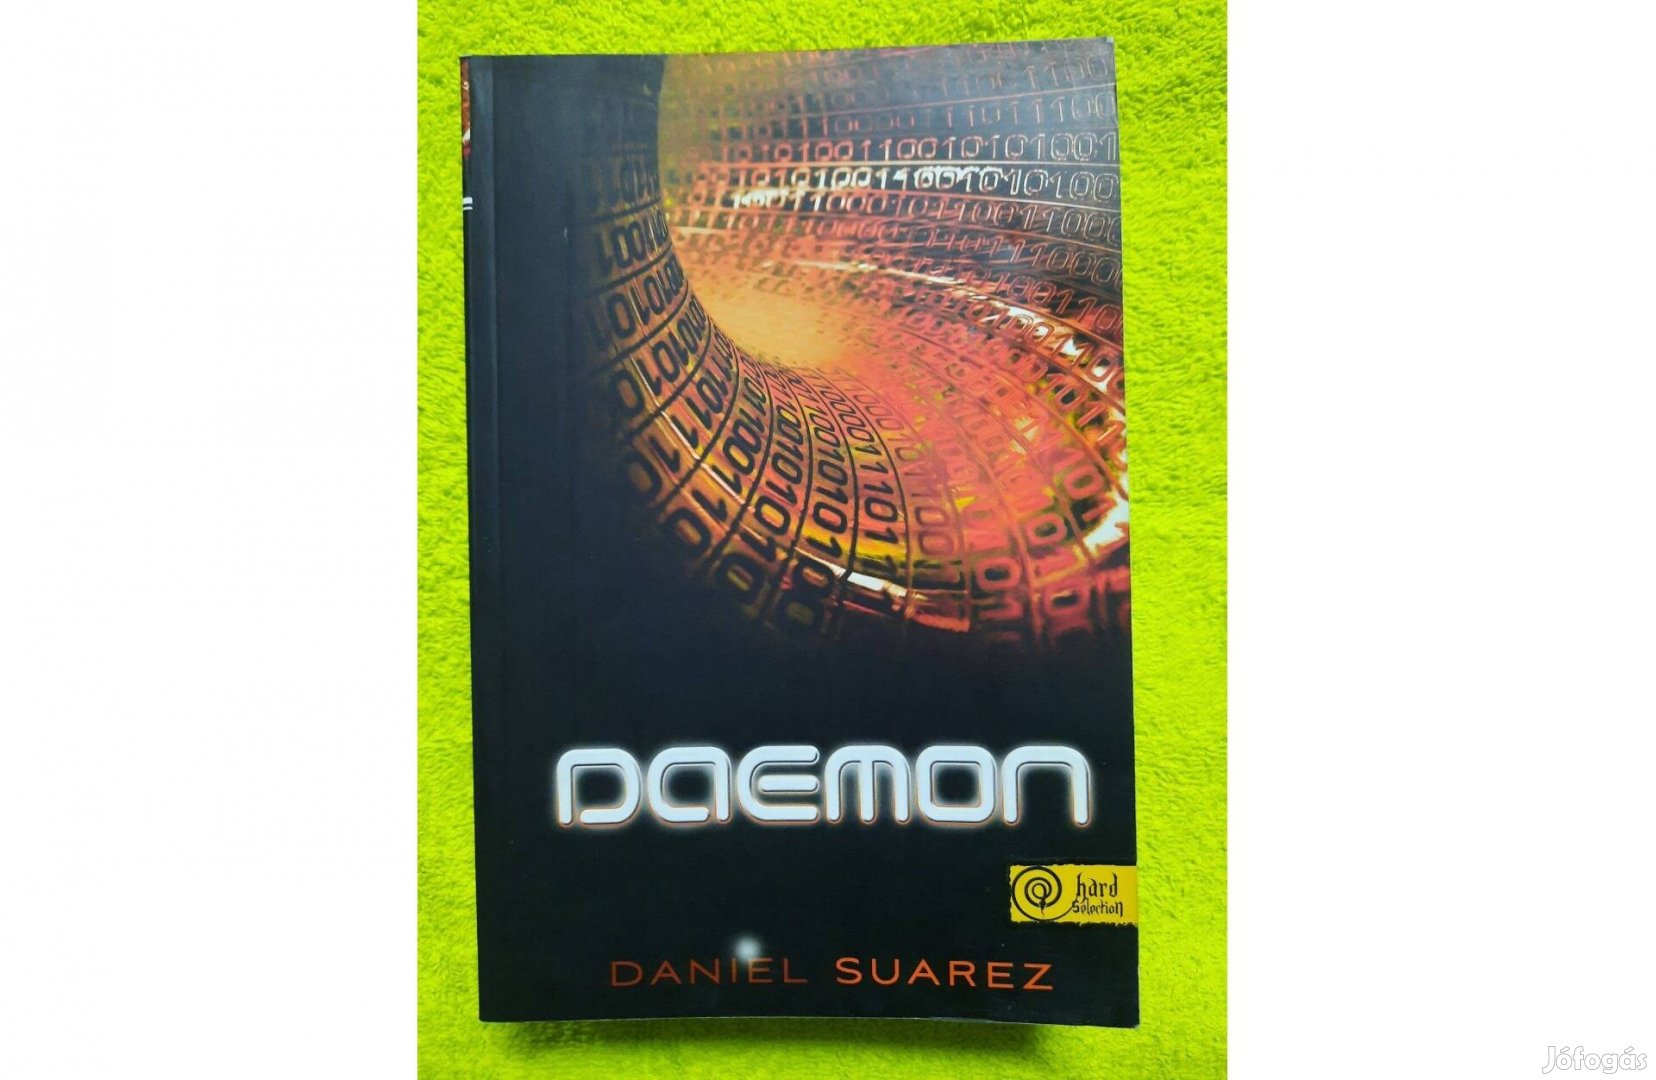 Daniel Suarez: Daemon